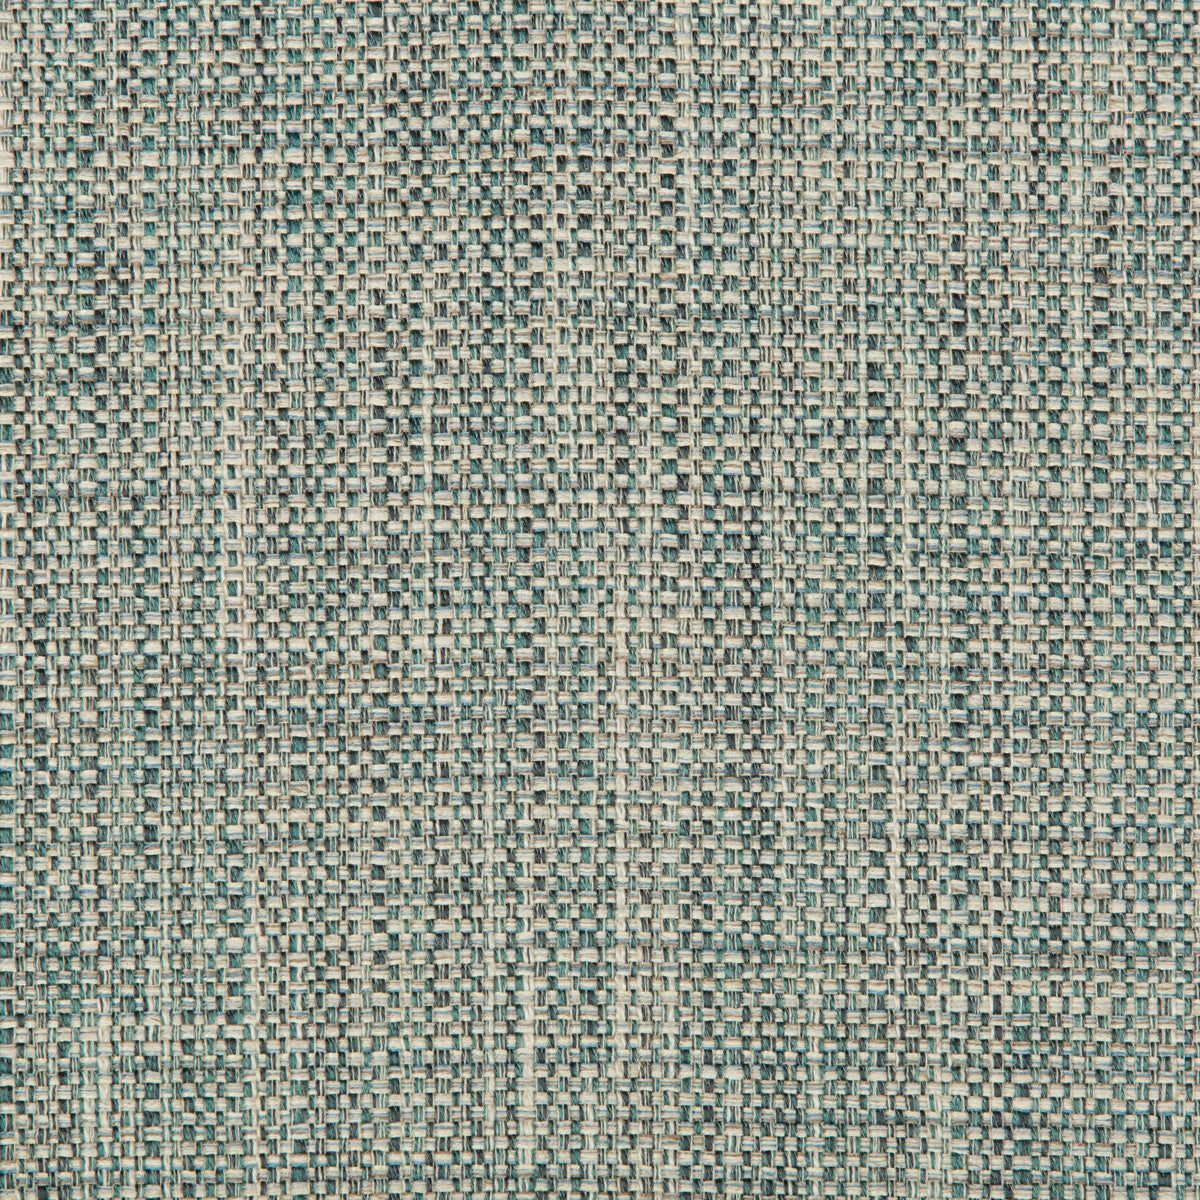 Kravet Basics fabric in 35250-15 color - pattern 35250.15.0 - by Kravet Basics